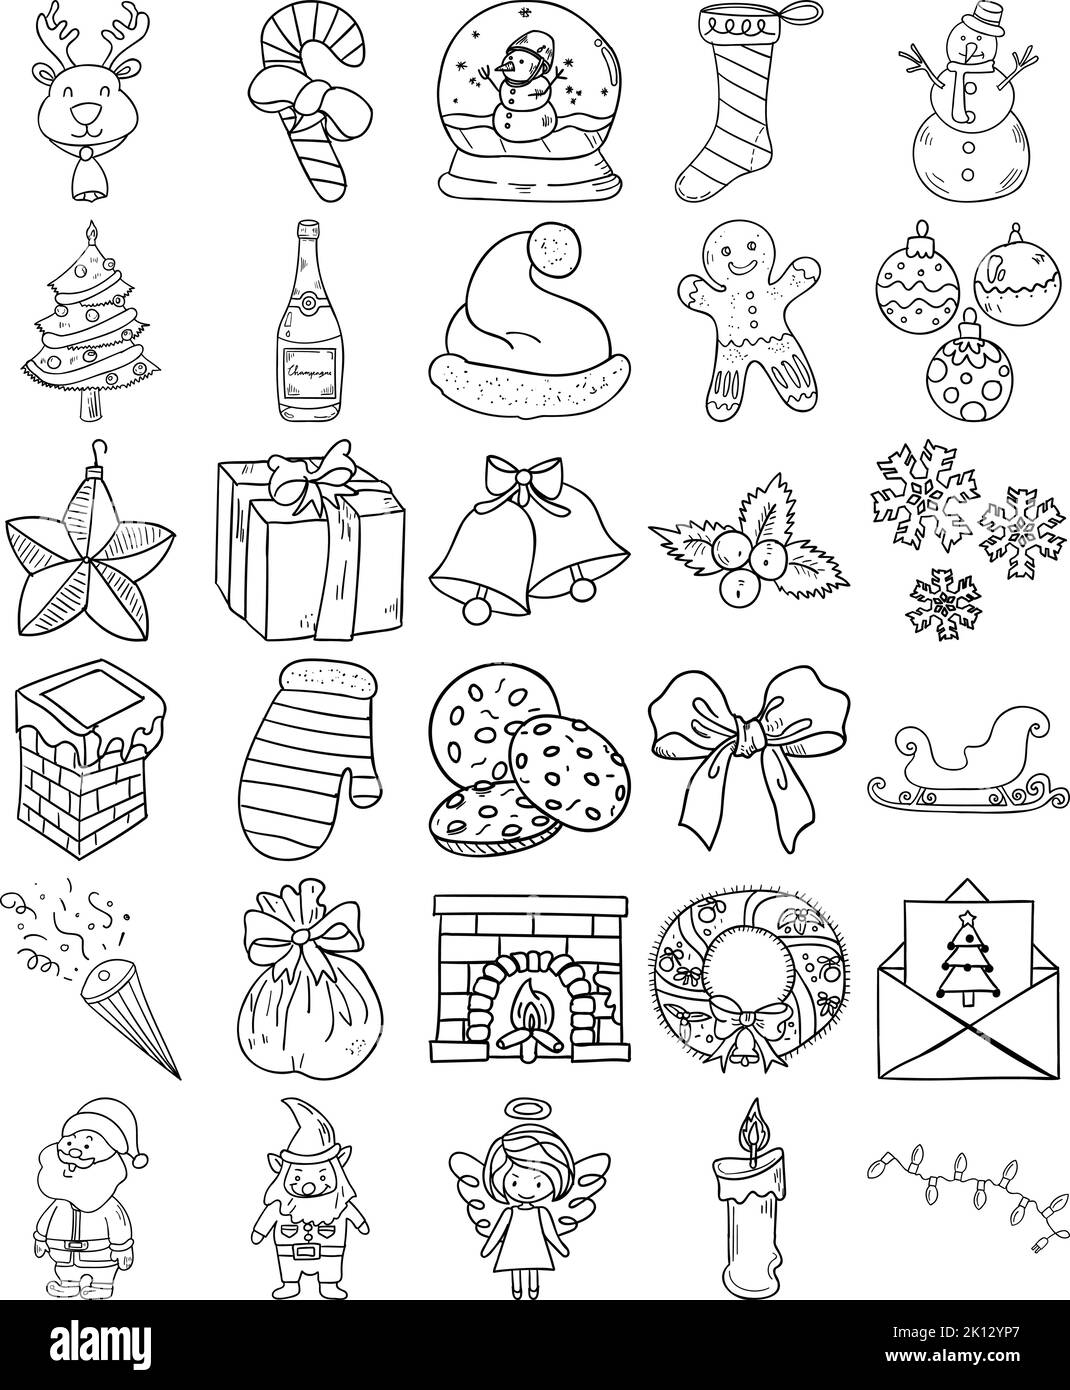 Handgezeichnetes Weihnachts-Doodle-Line-Art-Outline-Set mit Engel, Glocken, Bogen, Kerze, Zuckerrohr, Champagner, Kamin, Weihnachtskarte, Weihnachtsbaum Stock Vektor